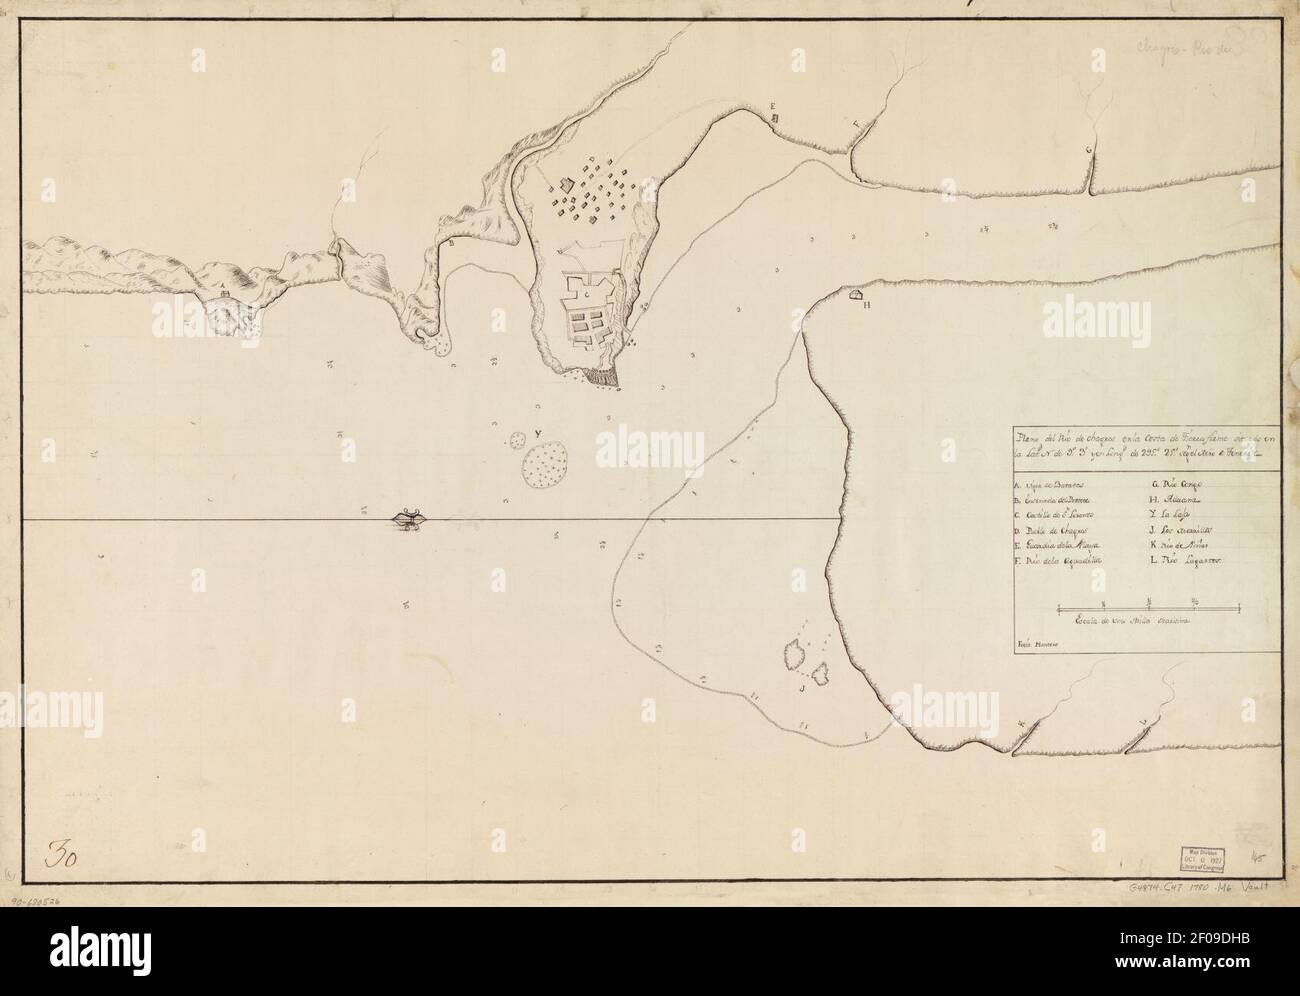 Plano del Río de Chagres en la costa de Tierra Firme situado en la latd. N. de 9⁰3ʹ (sic) y en longd. de 295⁰29ʹ segn. el mro. de Tenerife Stock Photo